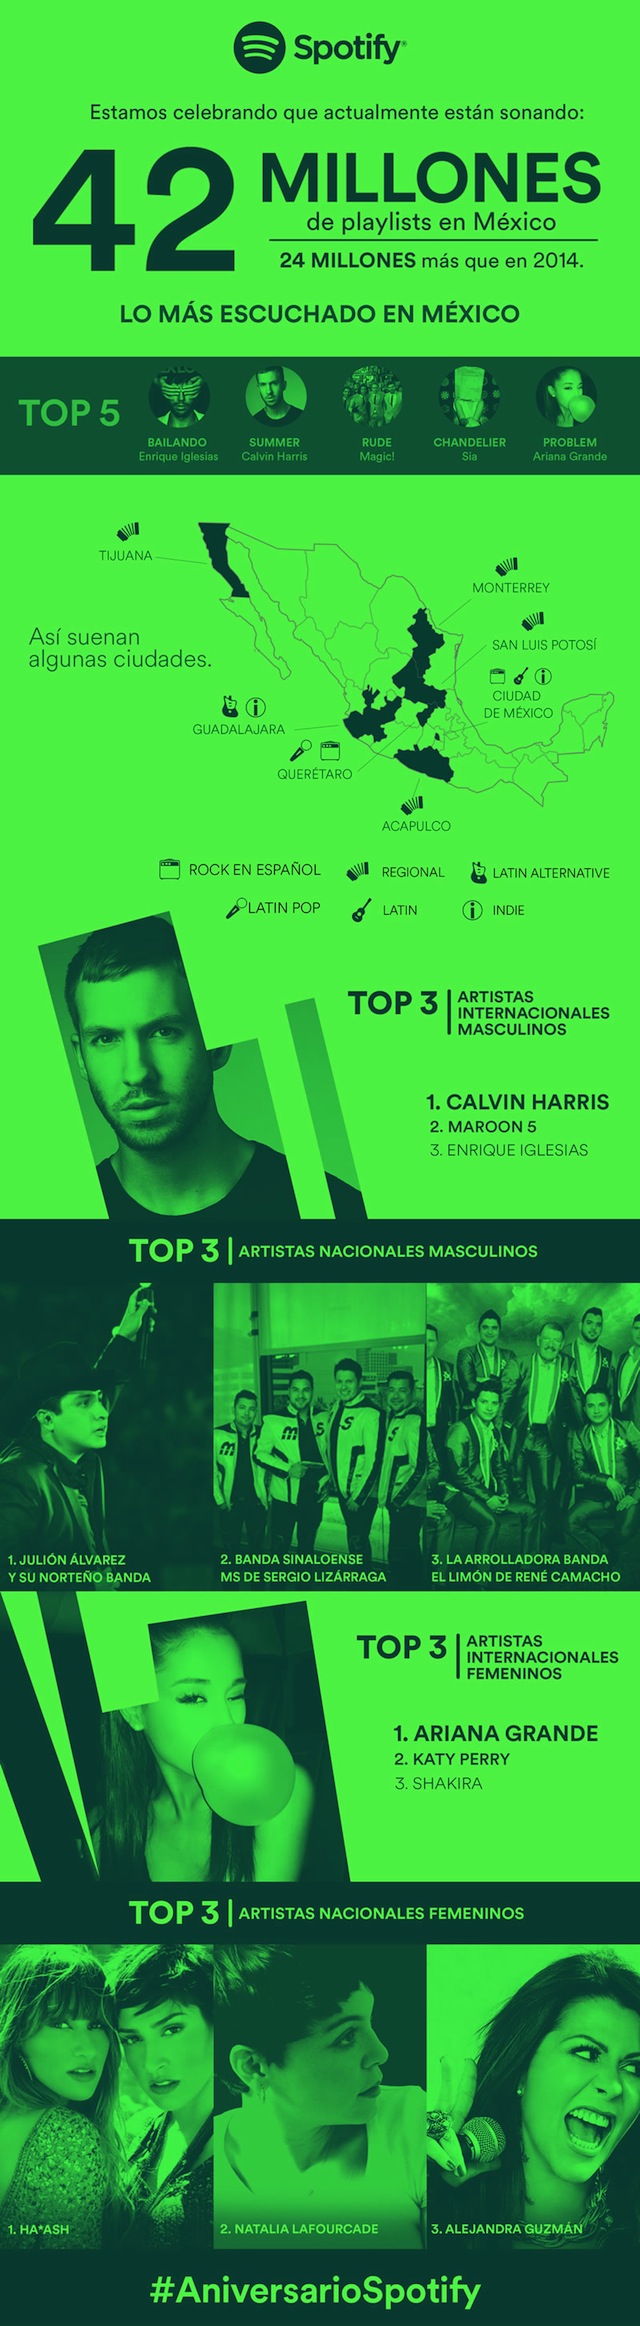 Spotify-en-Mexico-Infografia